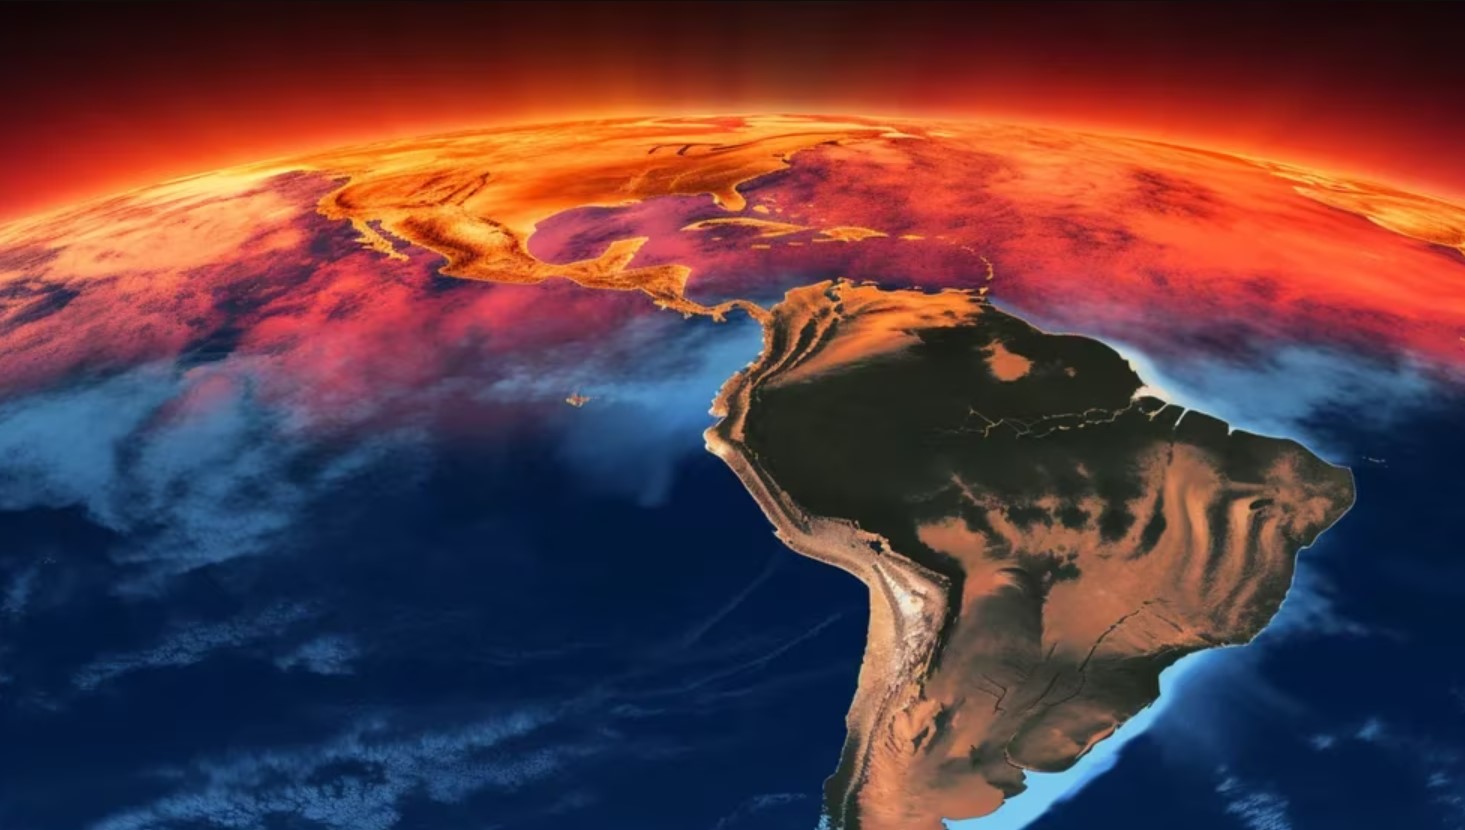 El cambio climático fue responsable de una ola letal de calor en Sur América, según estudio